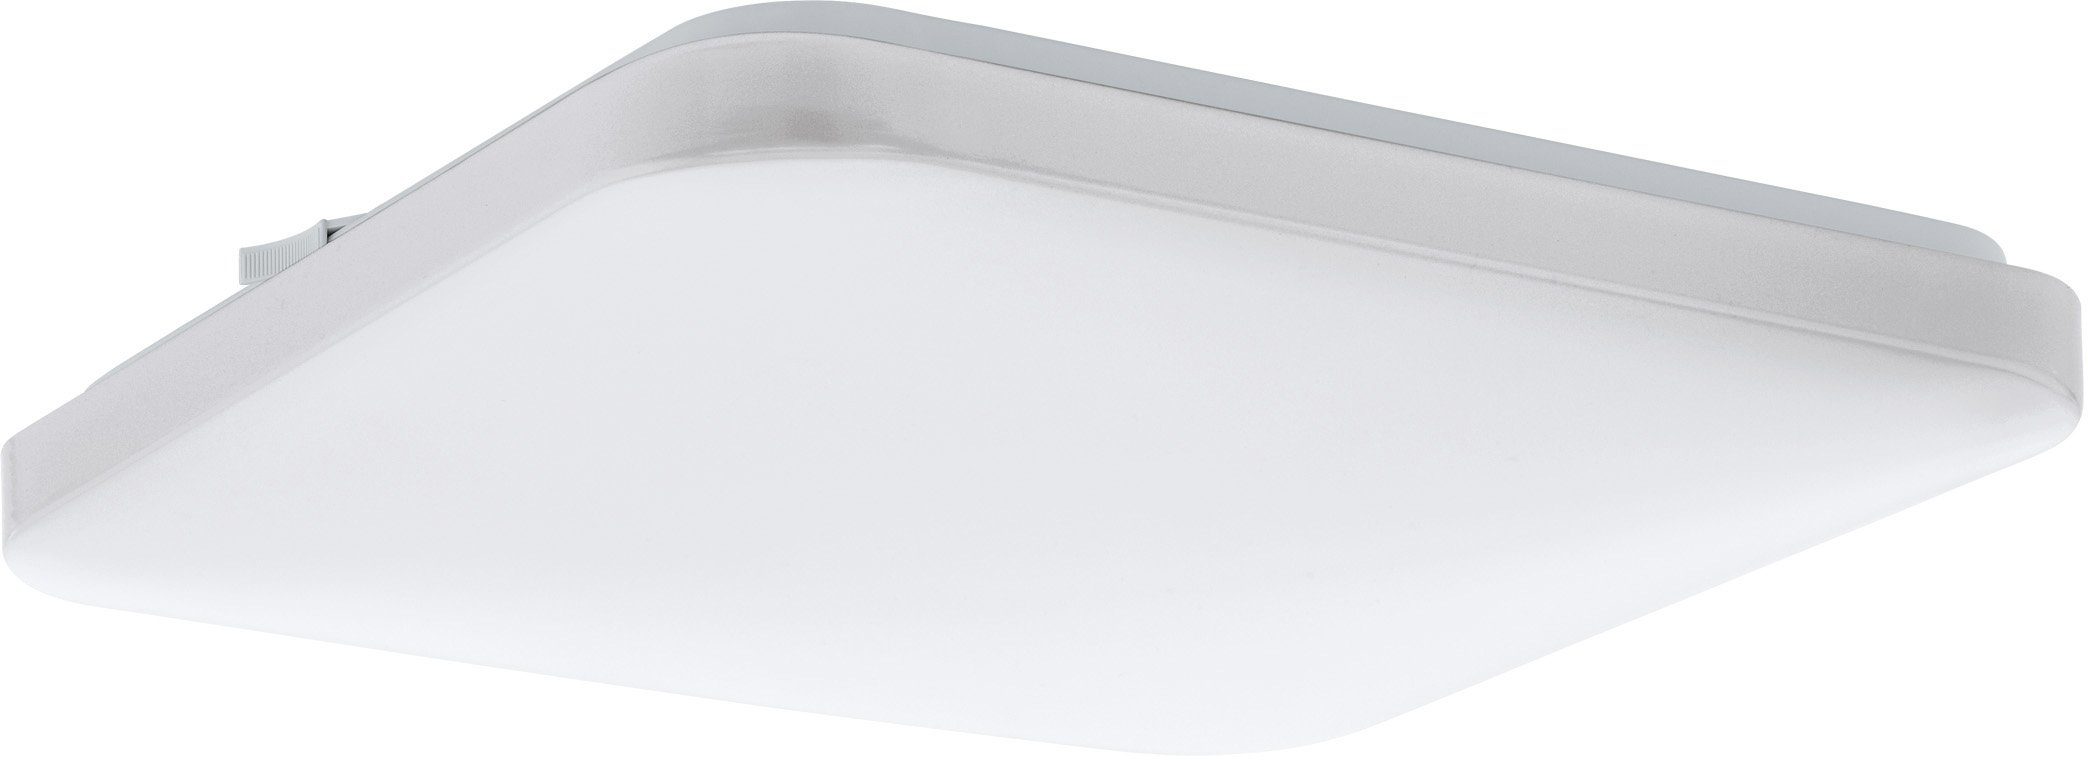 EGLO Plafondlamp FRANIA wit / l33 x h7 x b33 cm / inclusief 1x led-plank (elk 17,5w, 2000lm, 3000k) / warm wit licht - plafondlamp - slaapkamerlamp - bureaulamp - lamp - slaapkamer